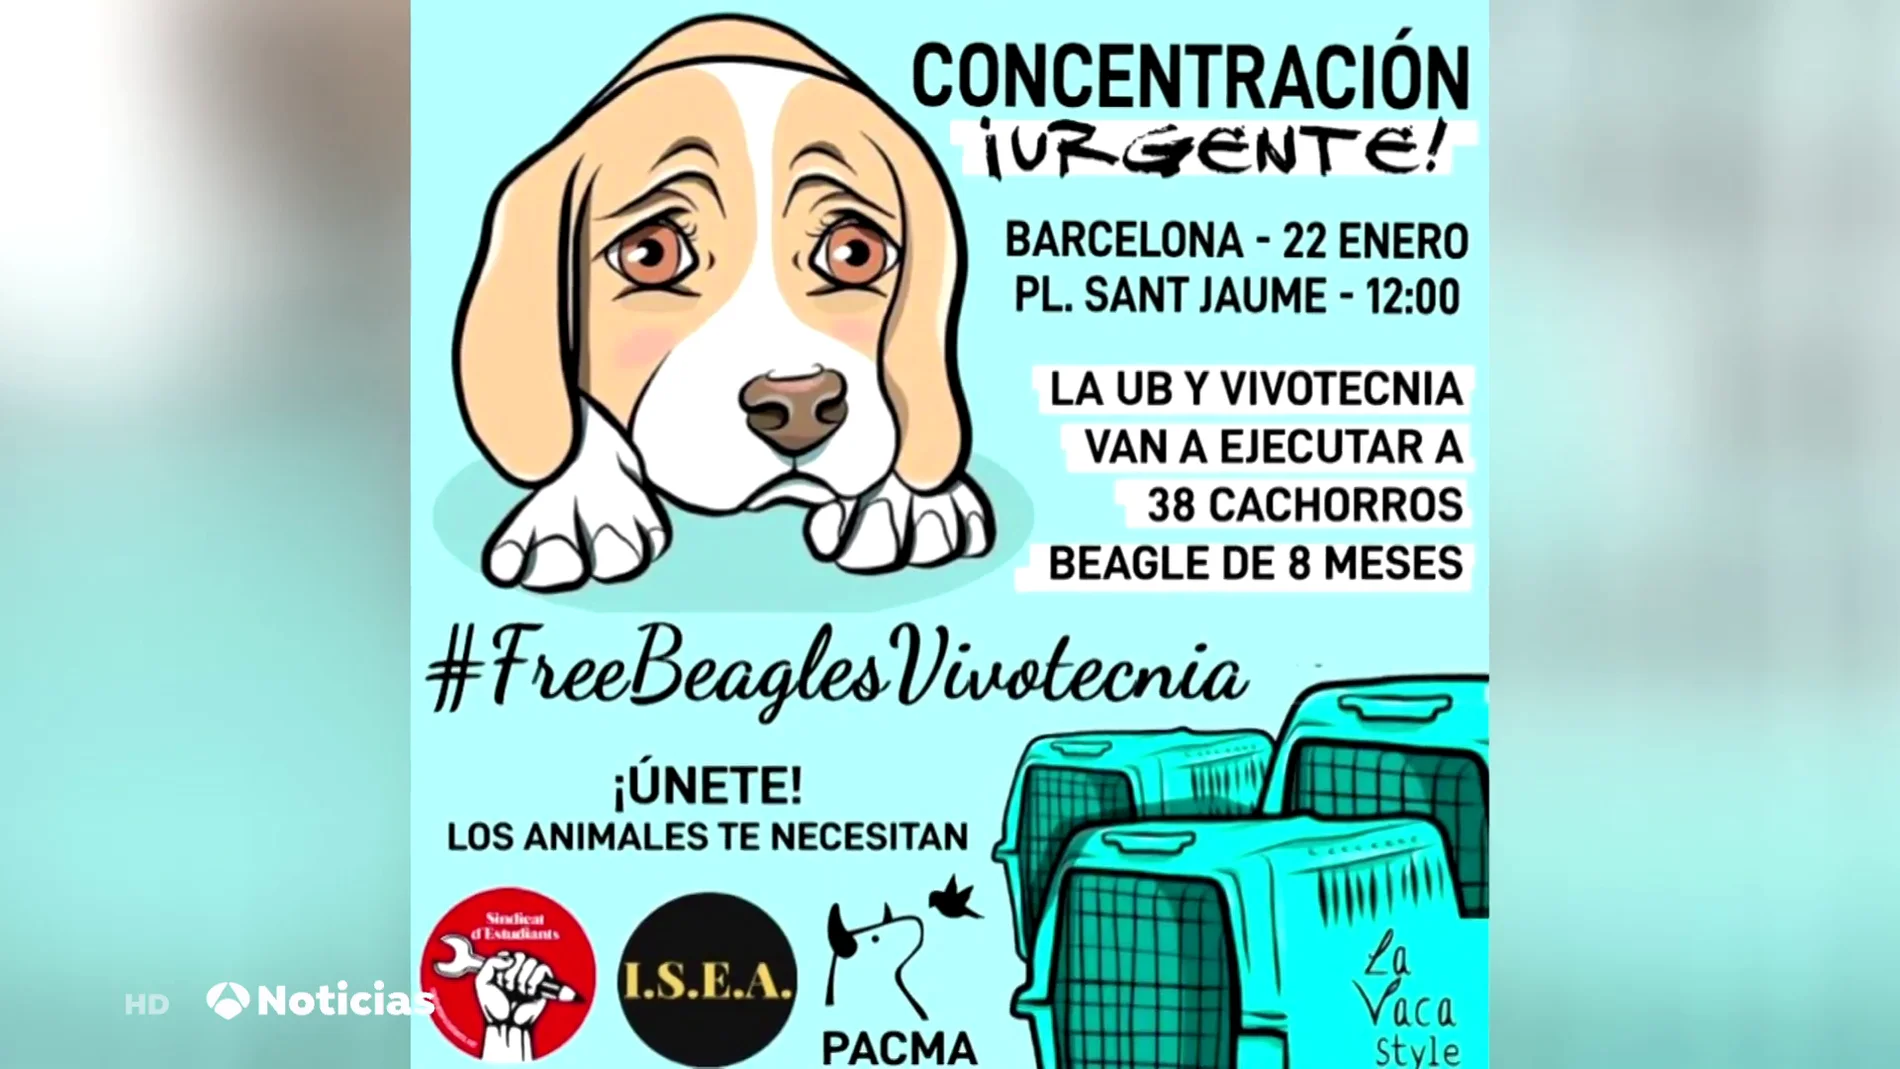 La Universidad de Barcelona asegura que no se ha comenzado a experimentar con los cachorro de beagle